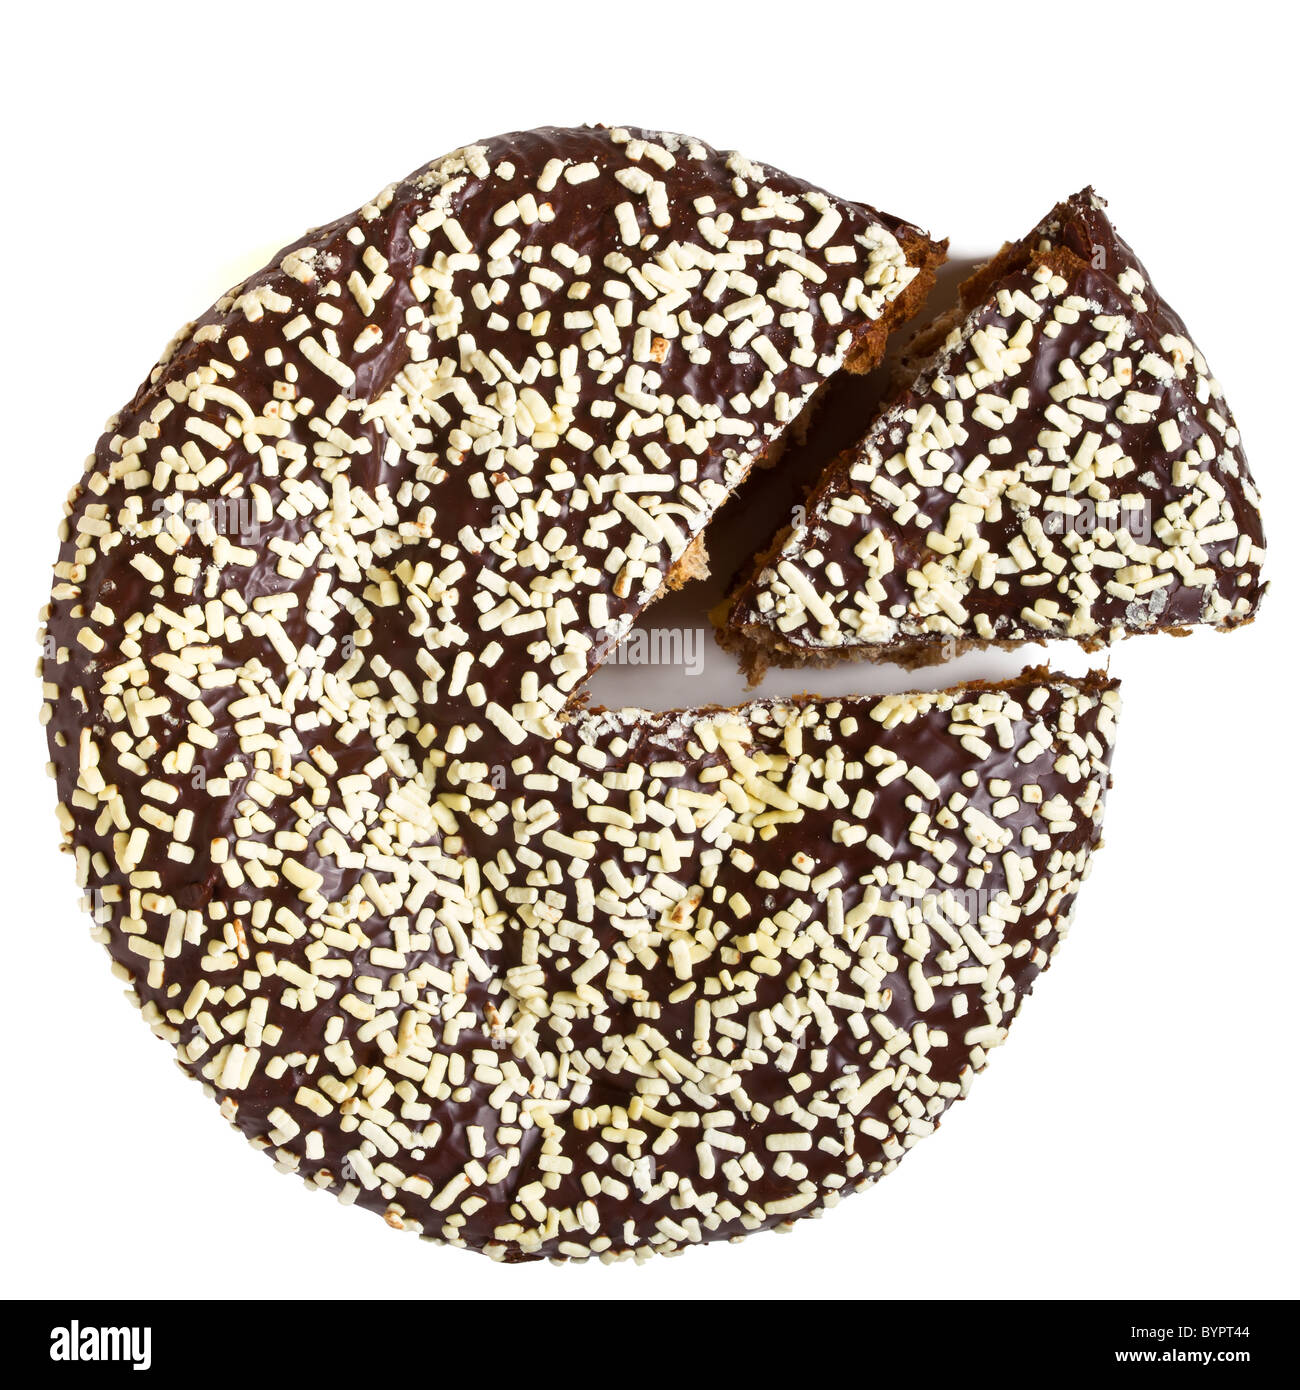 Il cioccolato panettone tradizionale di Natale italiana farcita con crema pasticcera. Foto Stock